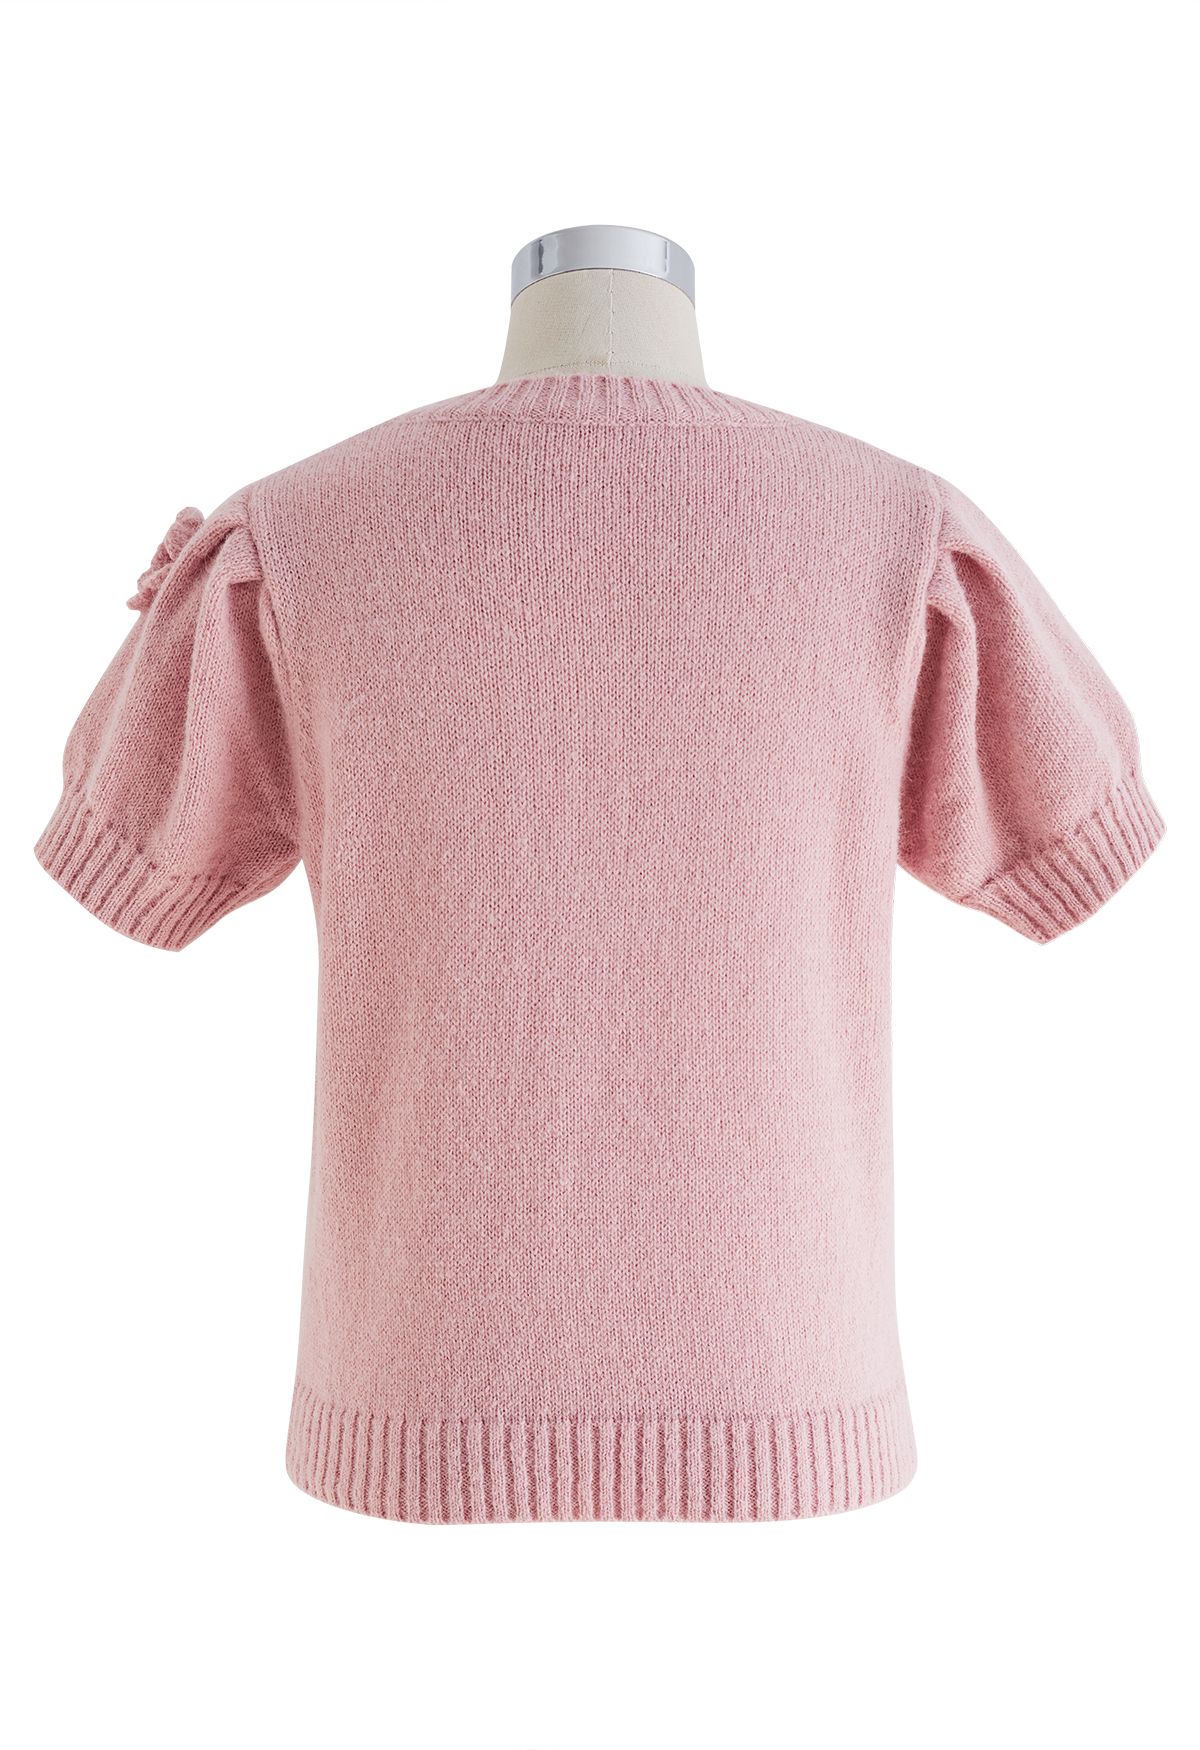 Crochet Flowers Trim Knit Top in Pink